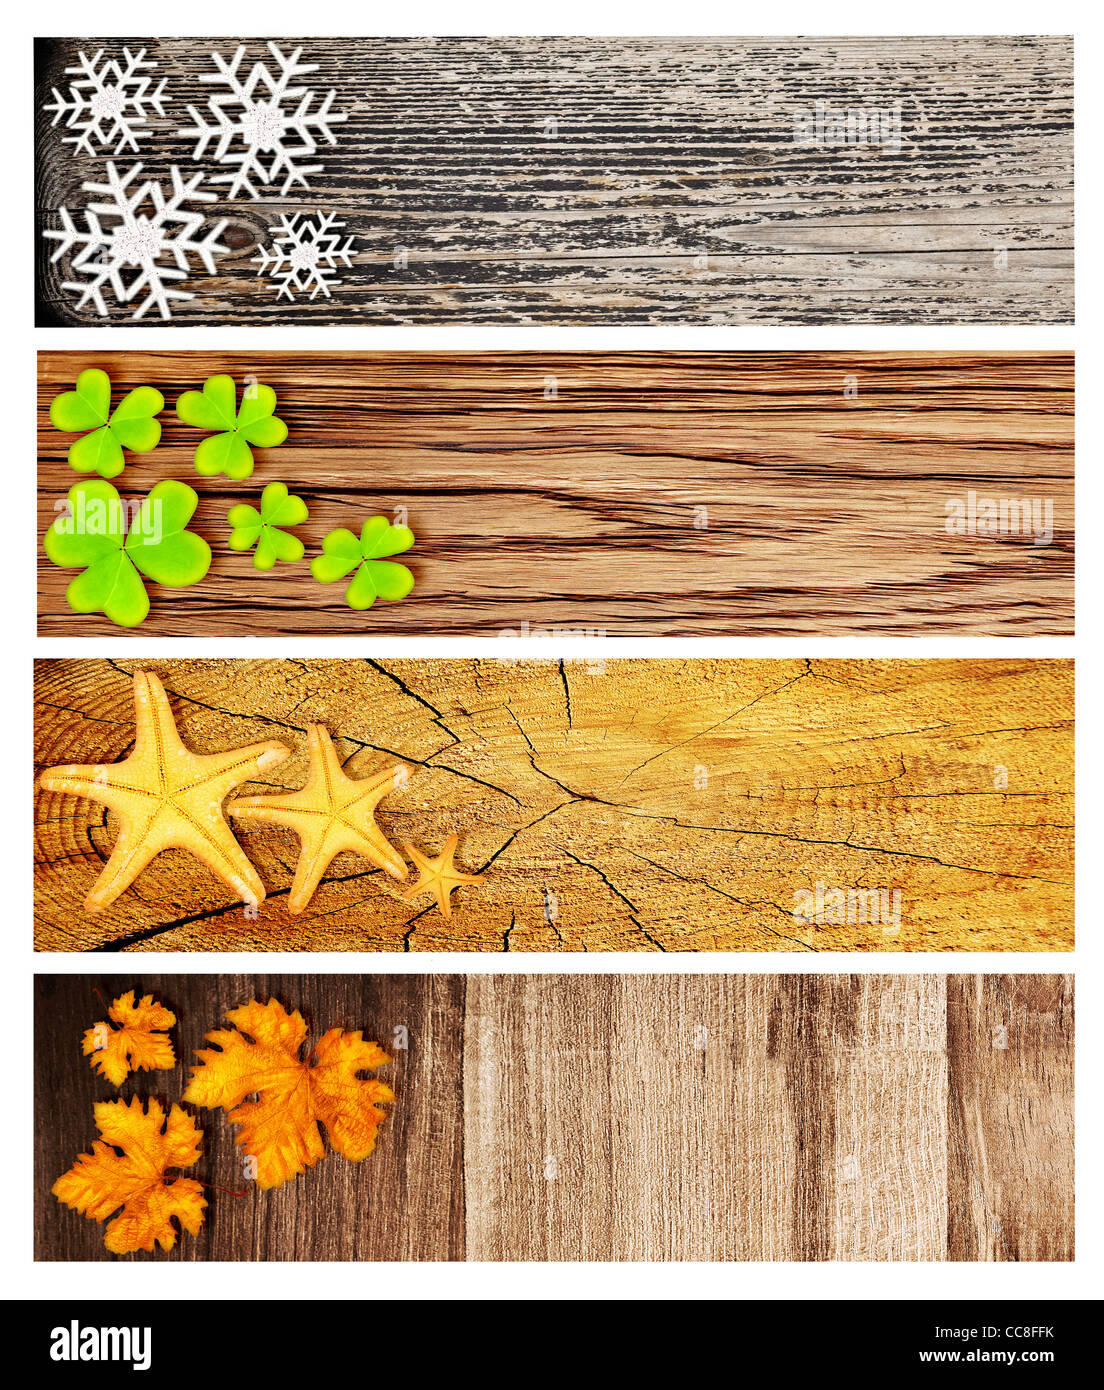 La saison quatre bannières en bois, collage d'origines naturelles abstrait avec symboles de saison, concept du cycle de vie Banque D'Images